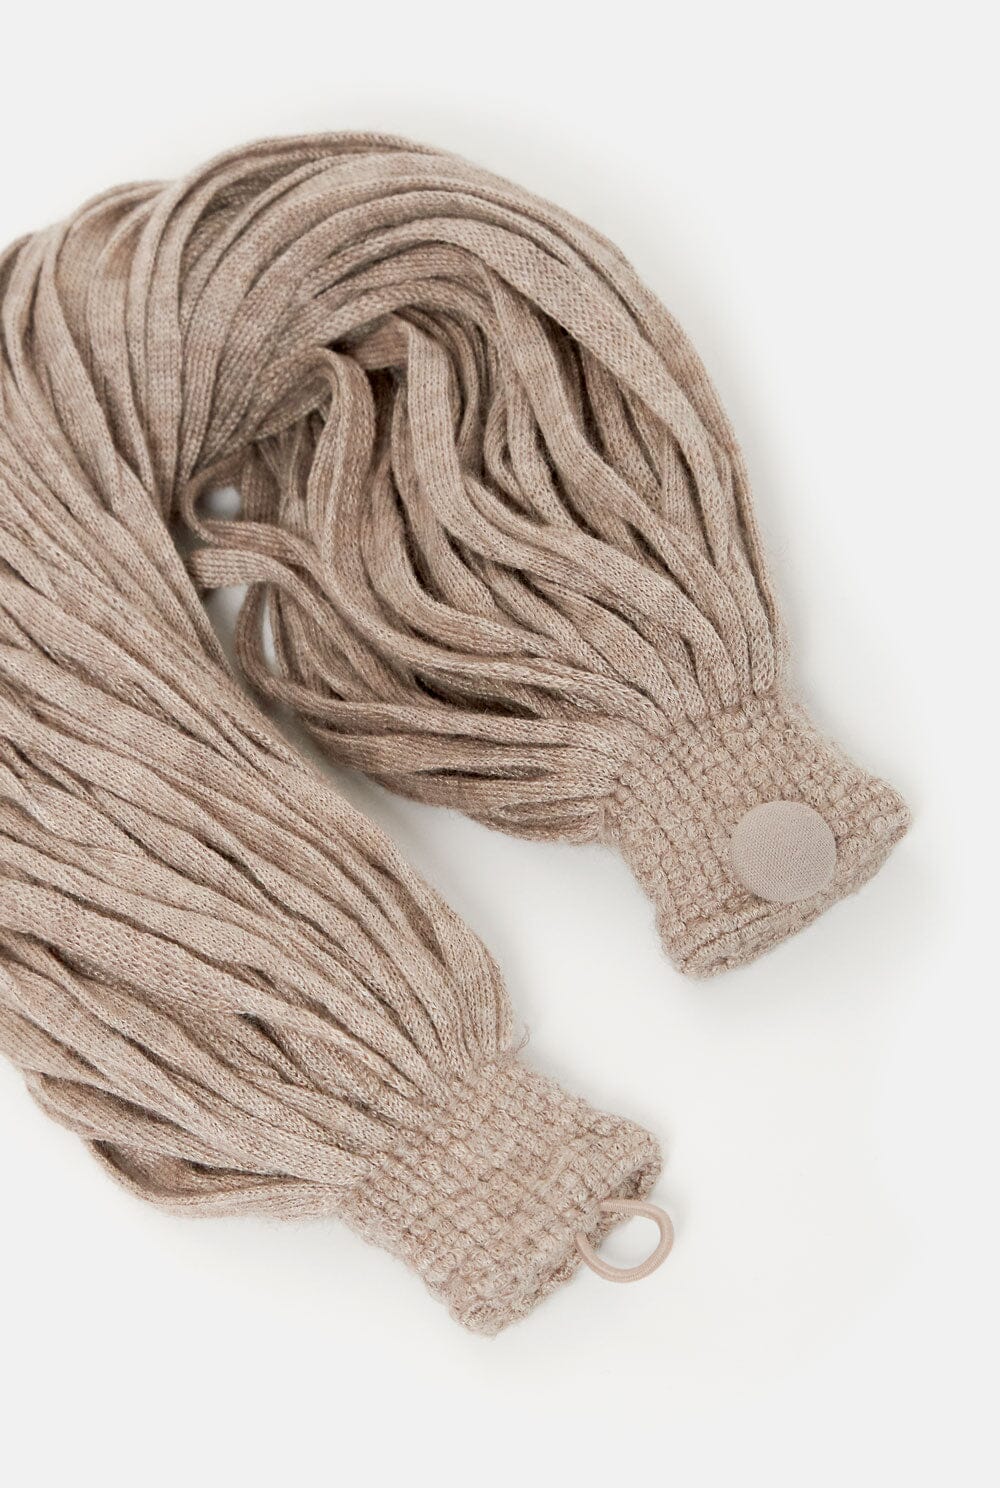 Collar cashmere/seda color topo Necklaces Victoria de Talhora 